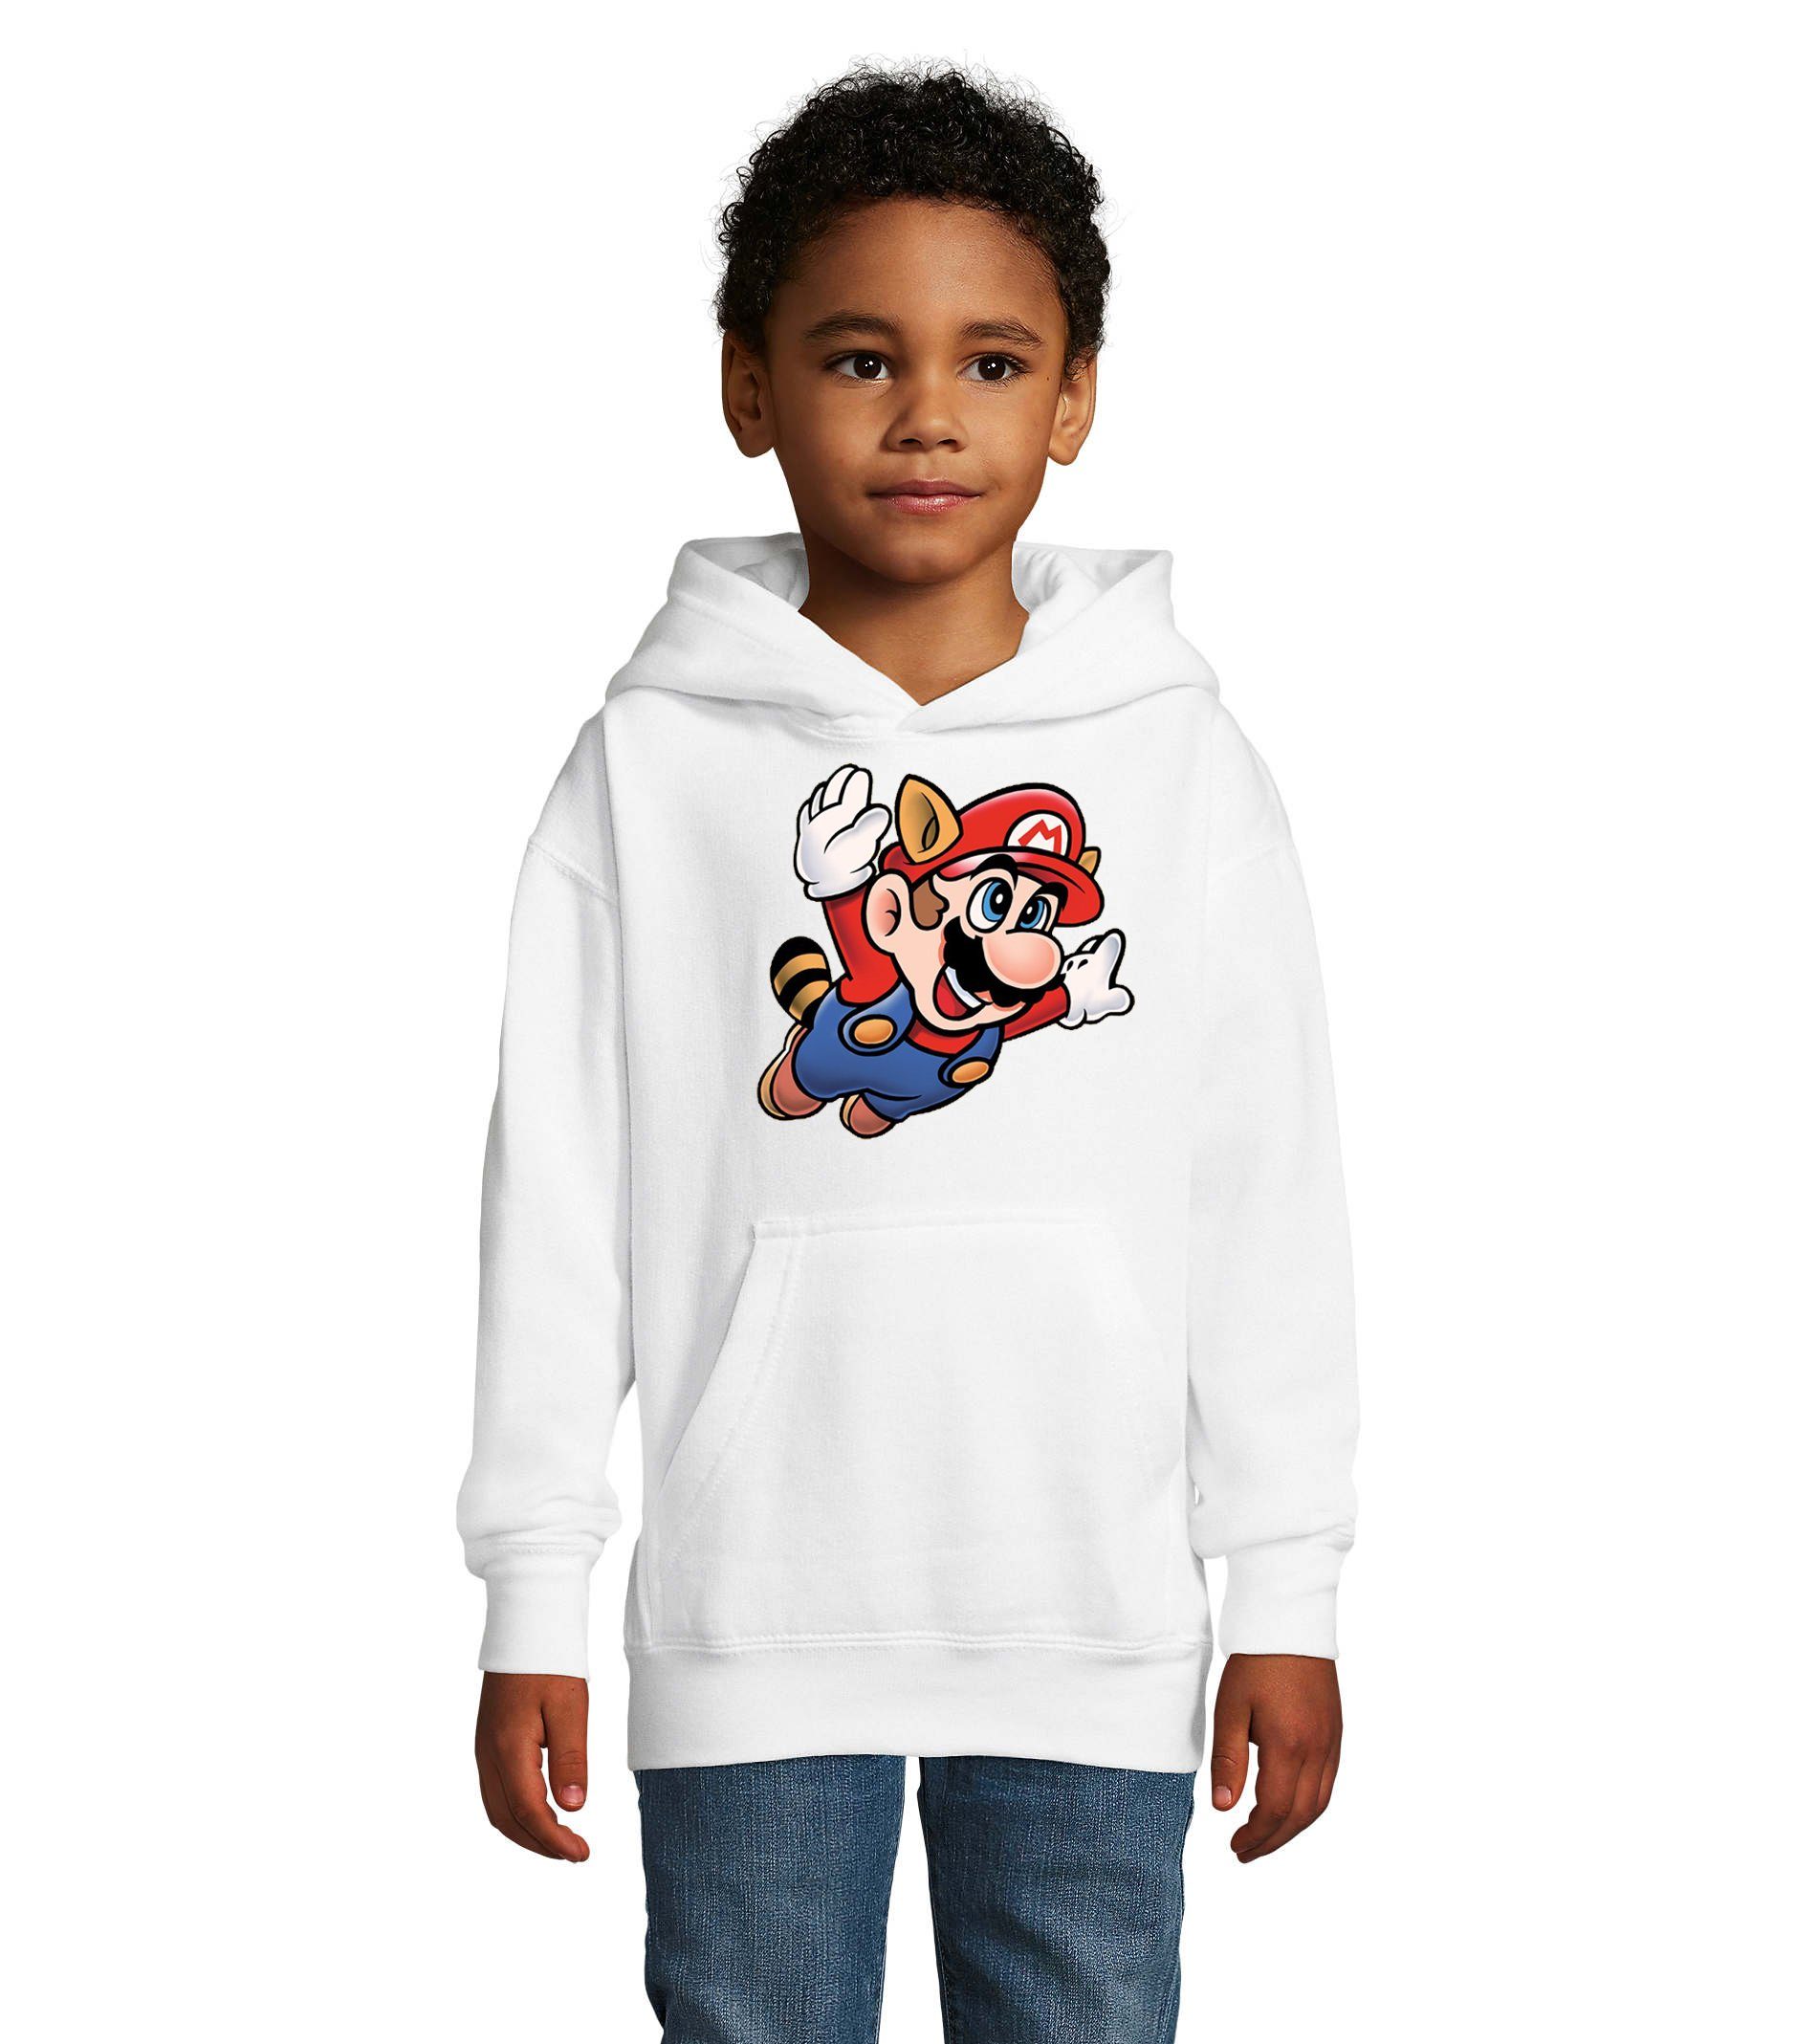 Blondie & Brownie Hoodie Kinder Jungen & Mädchen Super Mario 3 Fligh Nintendo mit Kapuze Weiss